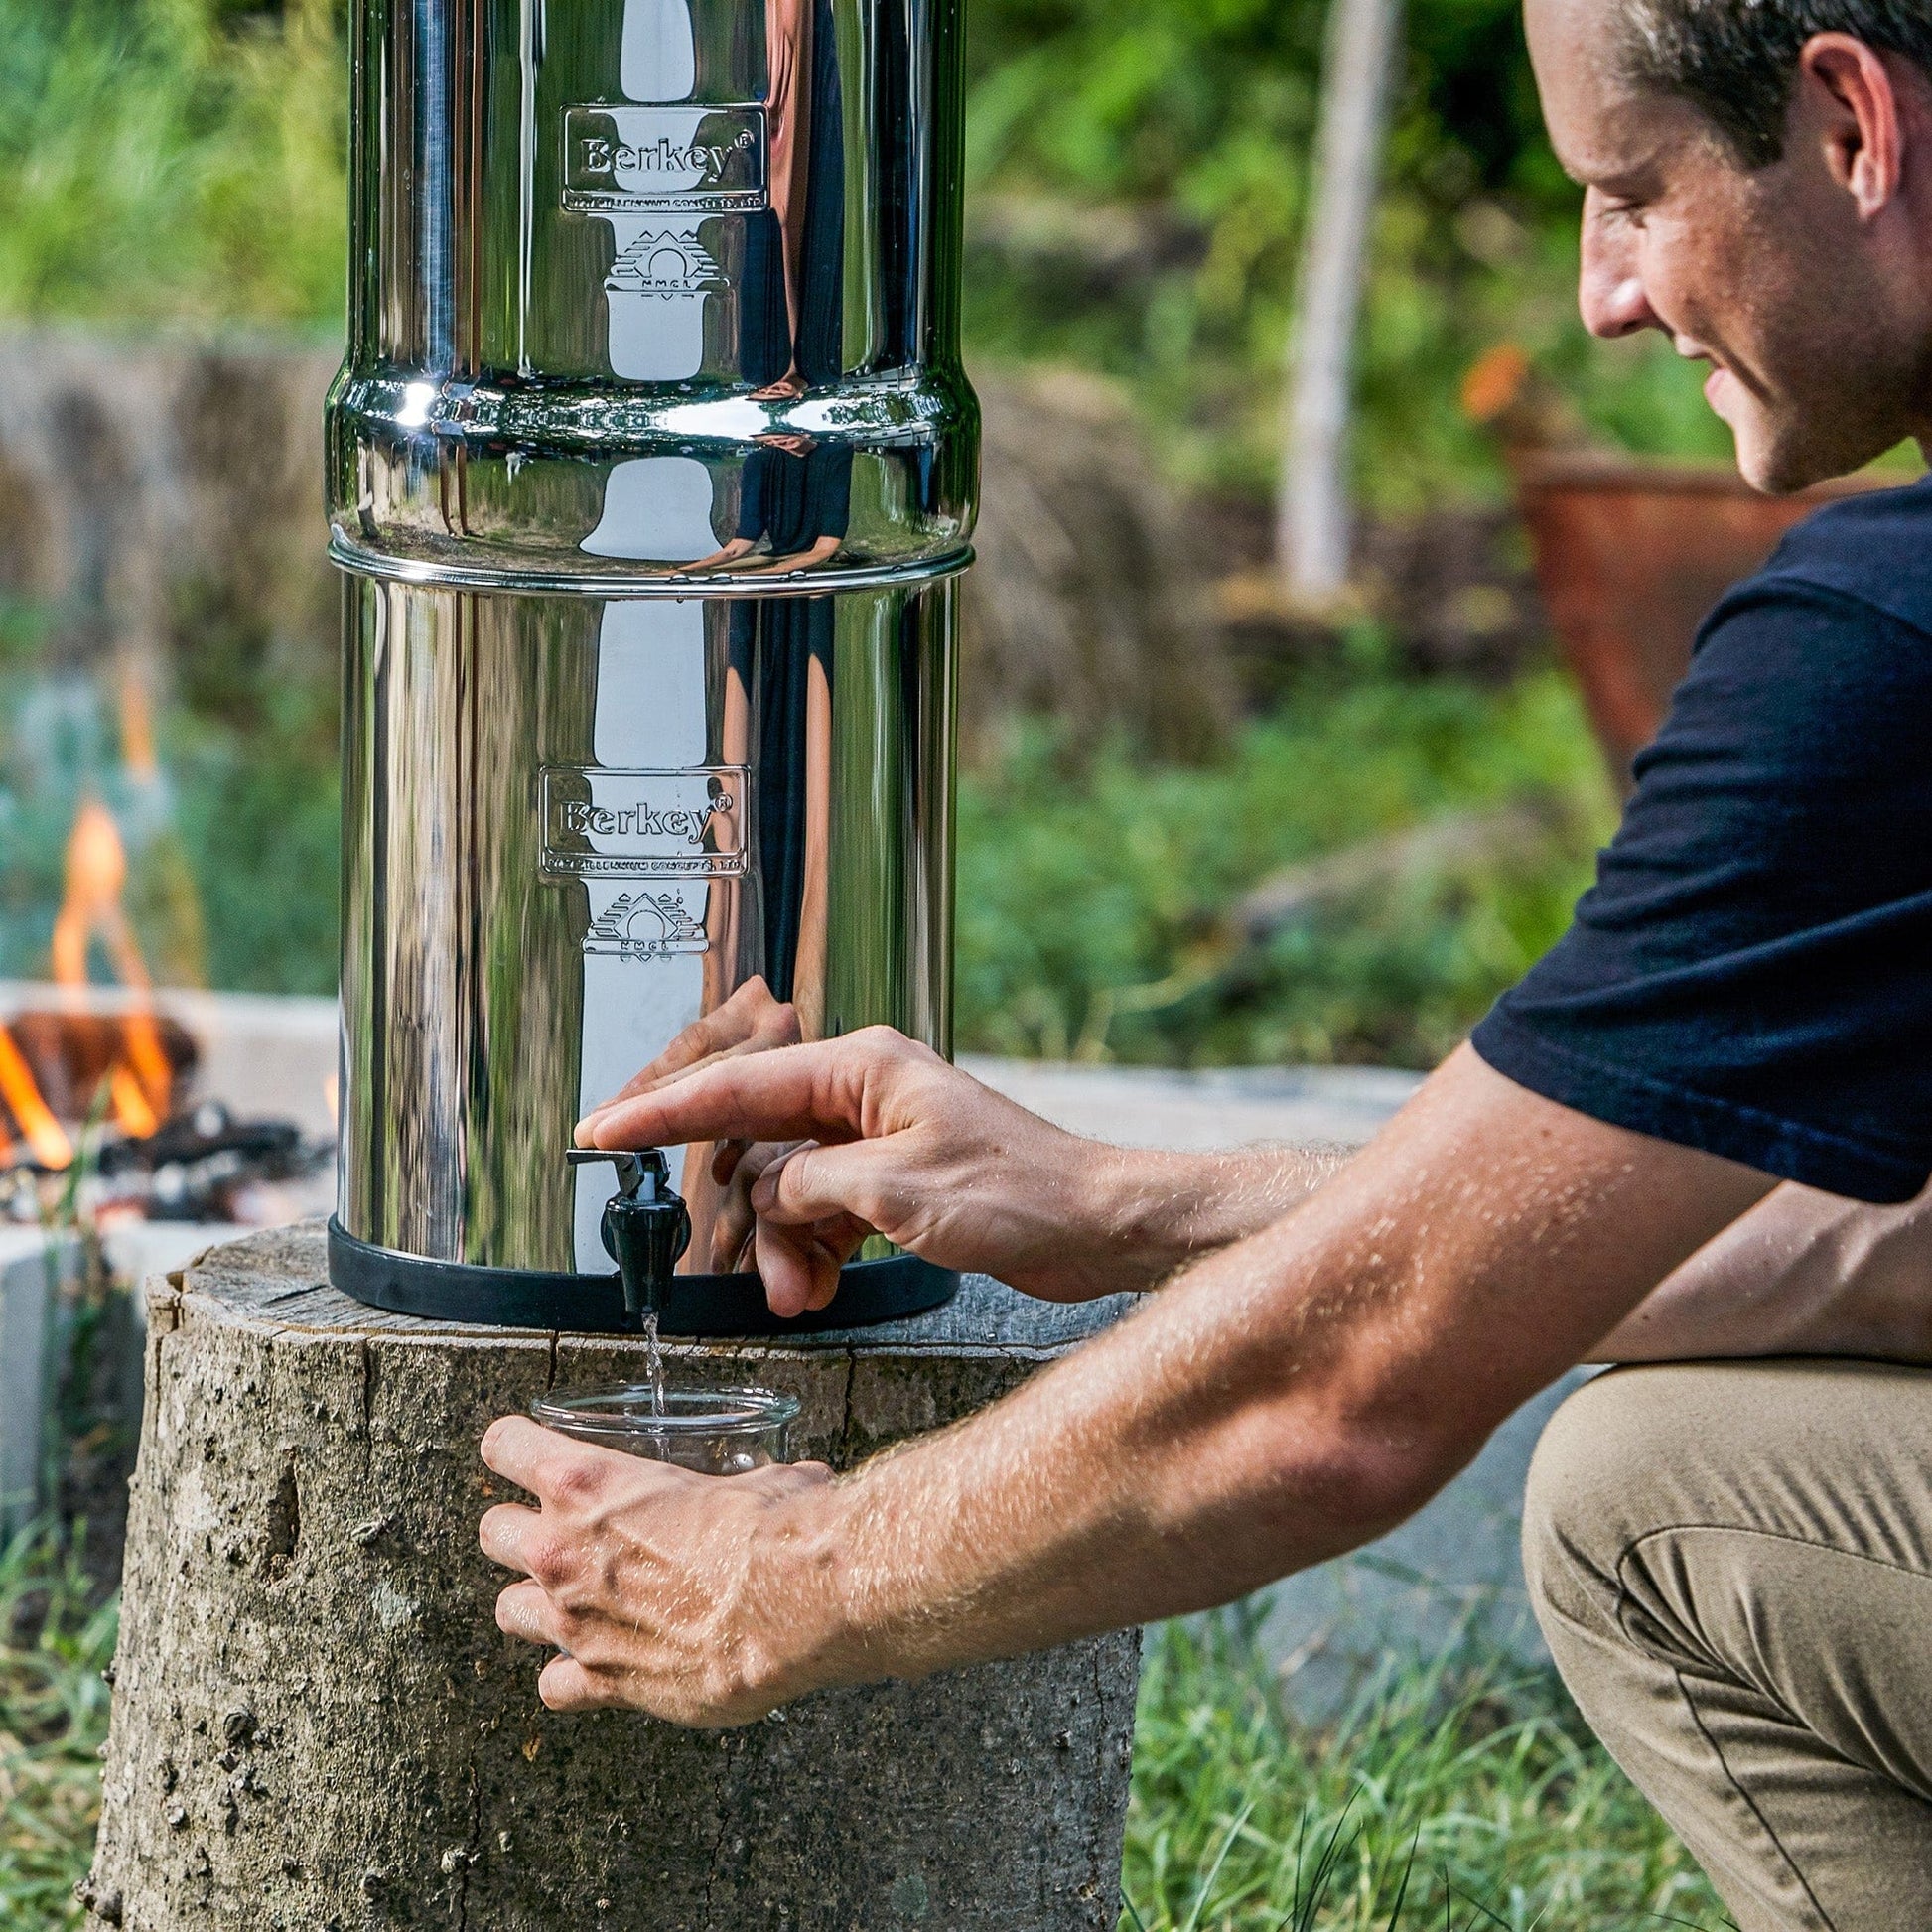 Royal Berkey® fontaine à eau 12.3 litres - 2 filtres